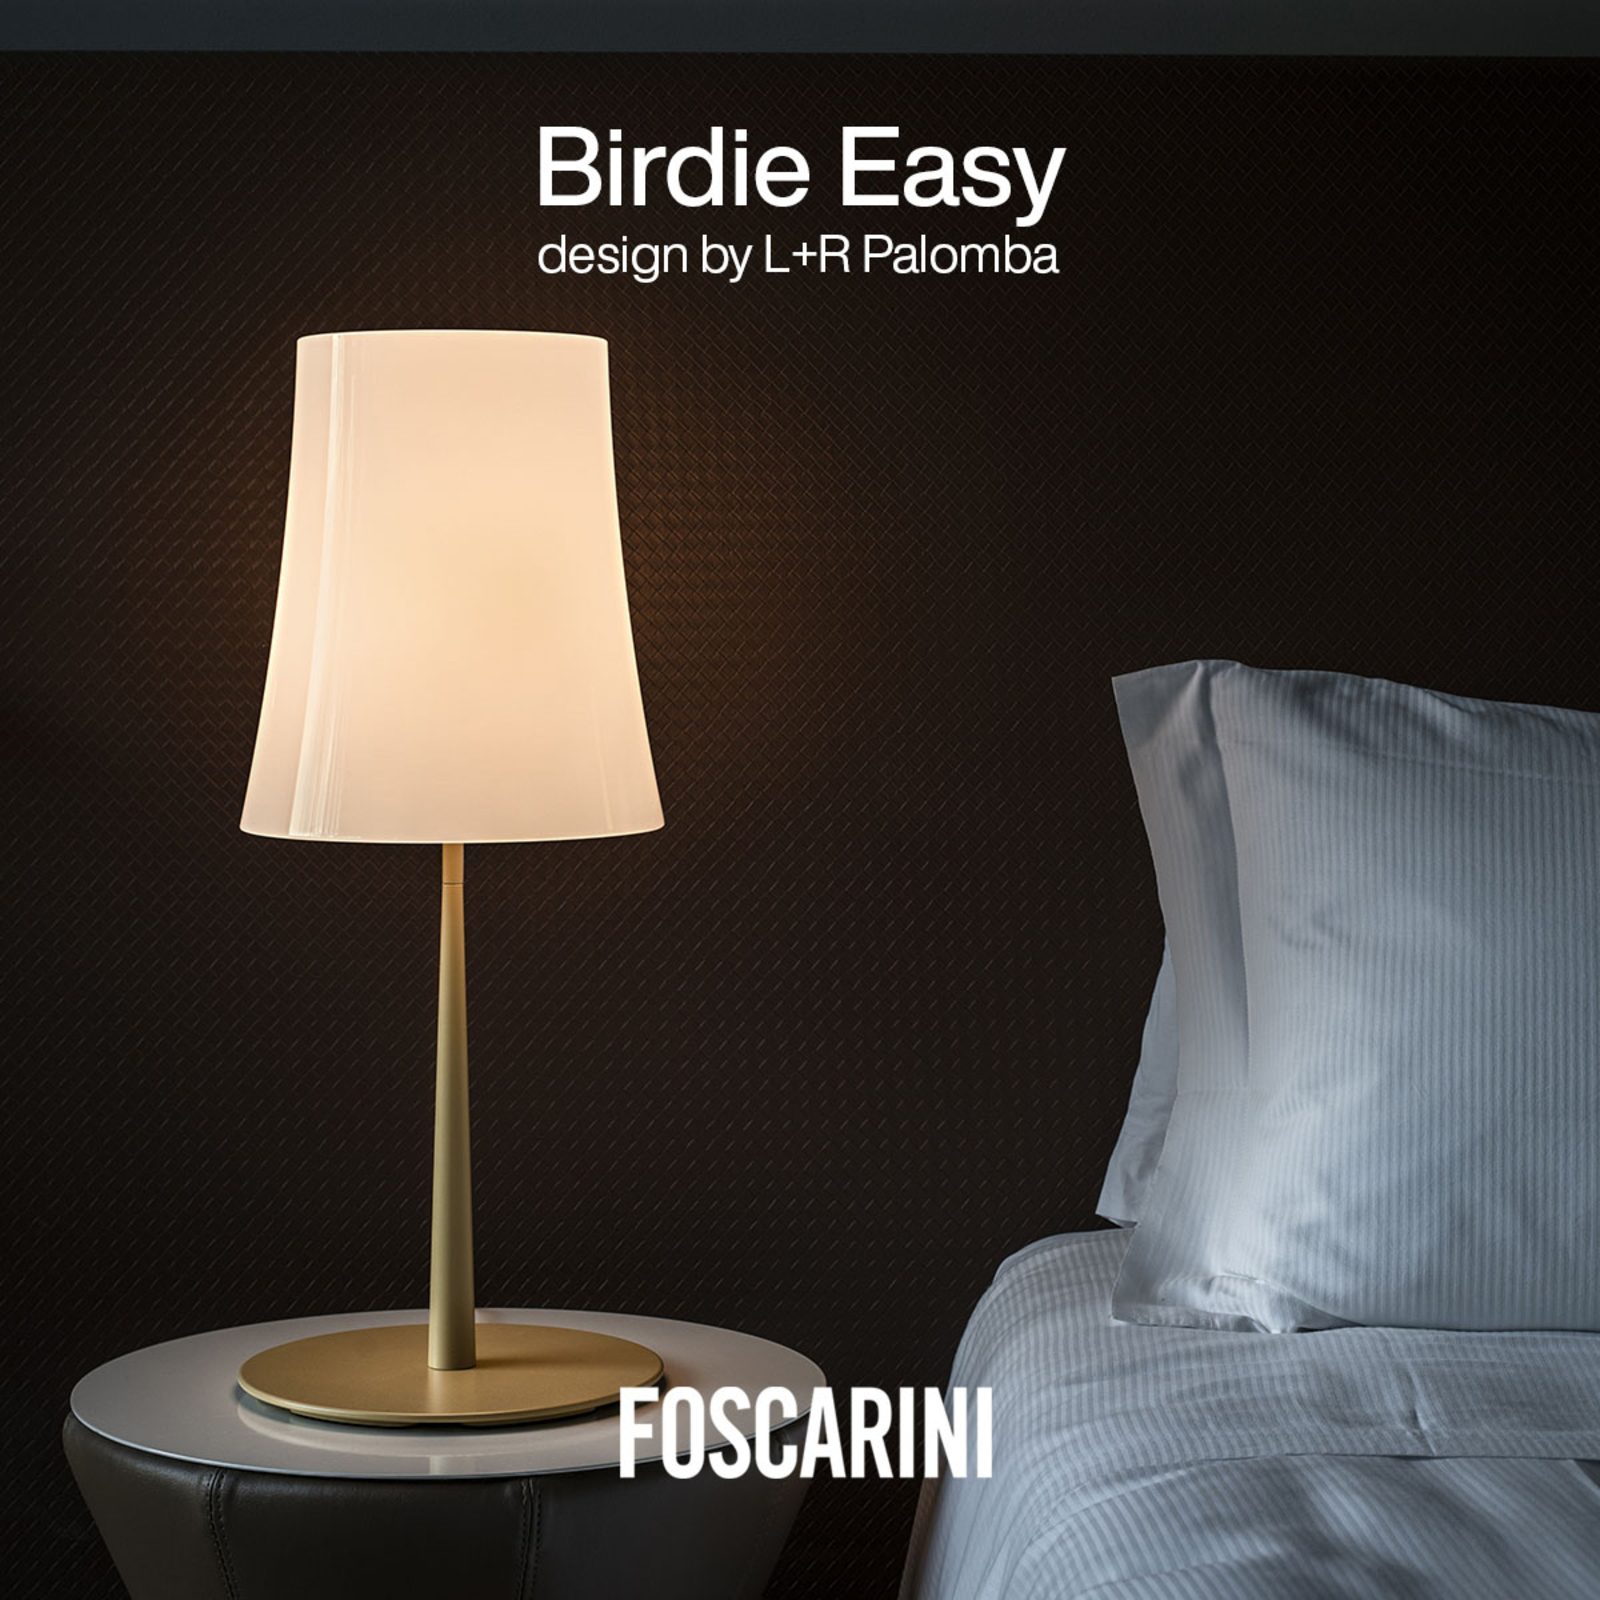 Foscarini Birdie Easy Grande επιτραπέζιο φωτιστικό αμμοκίτρινο